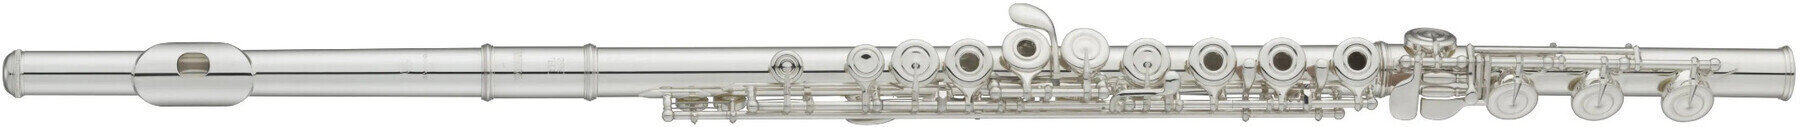 Concert flute Avanti 1000BIF Concert flute